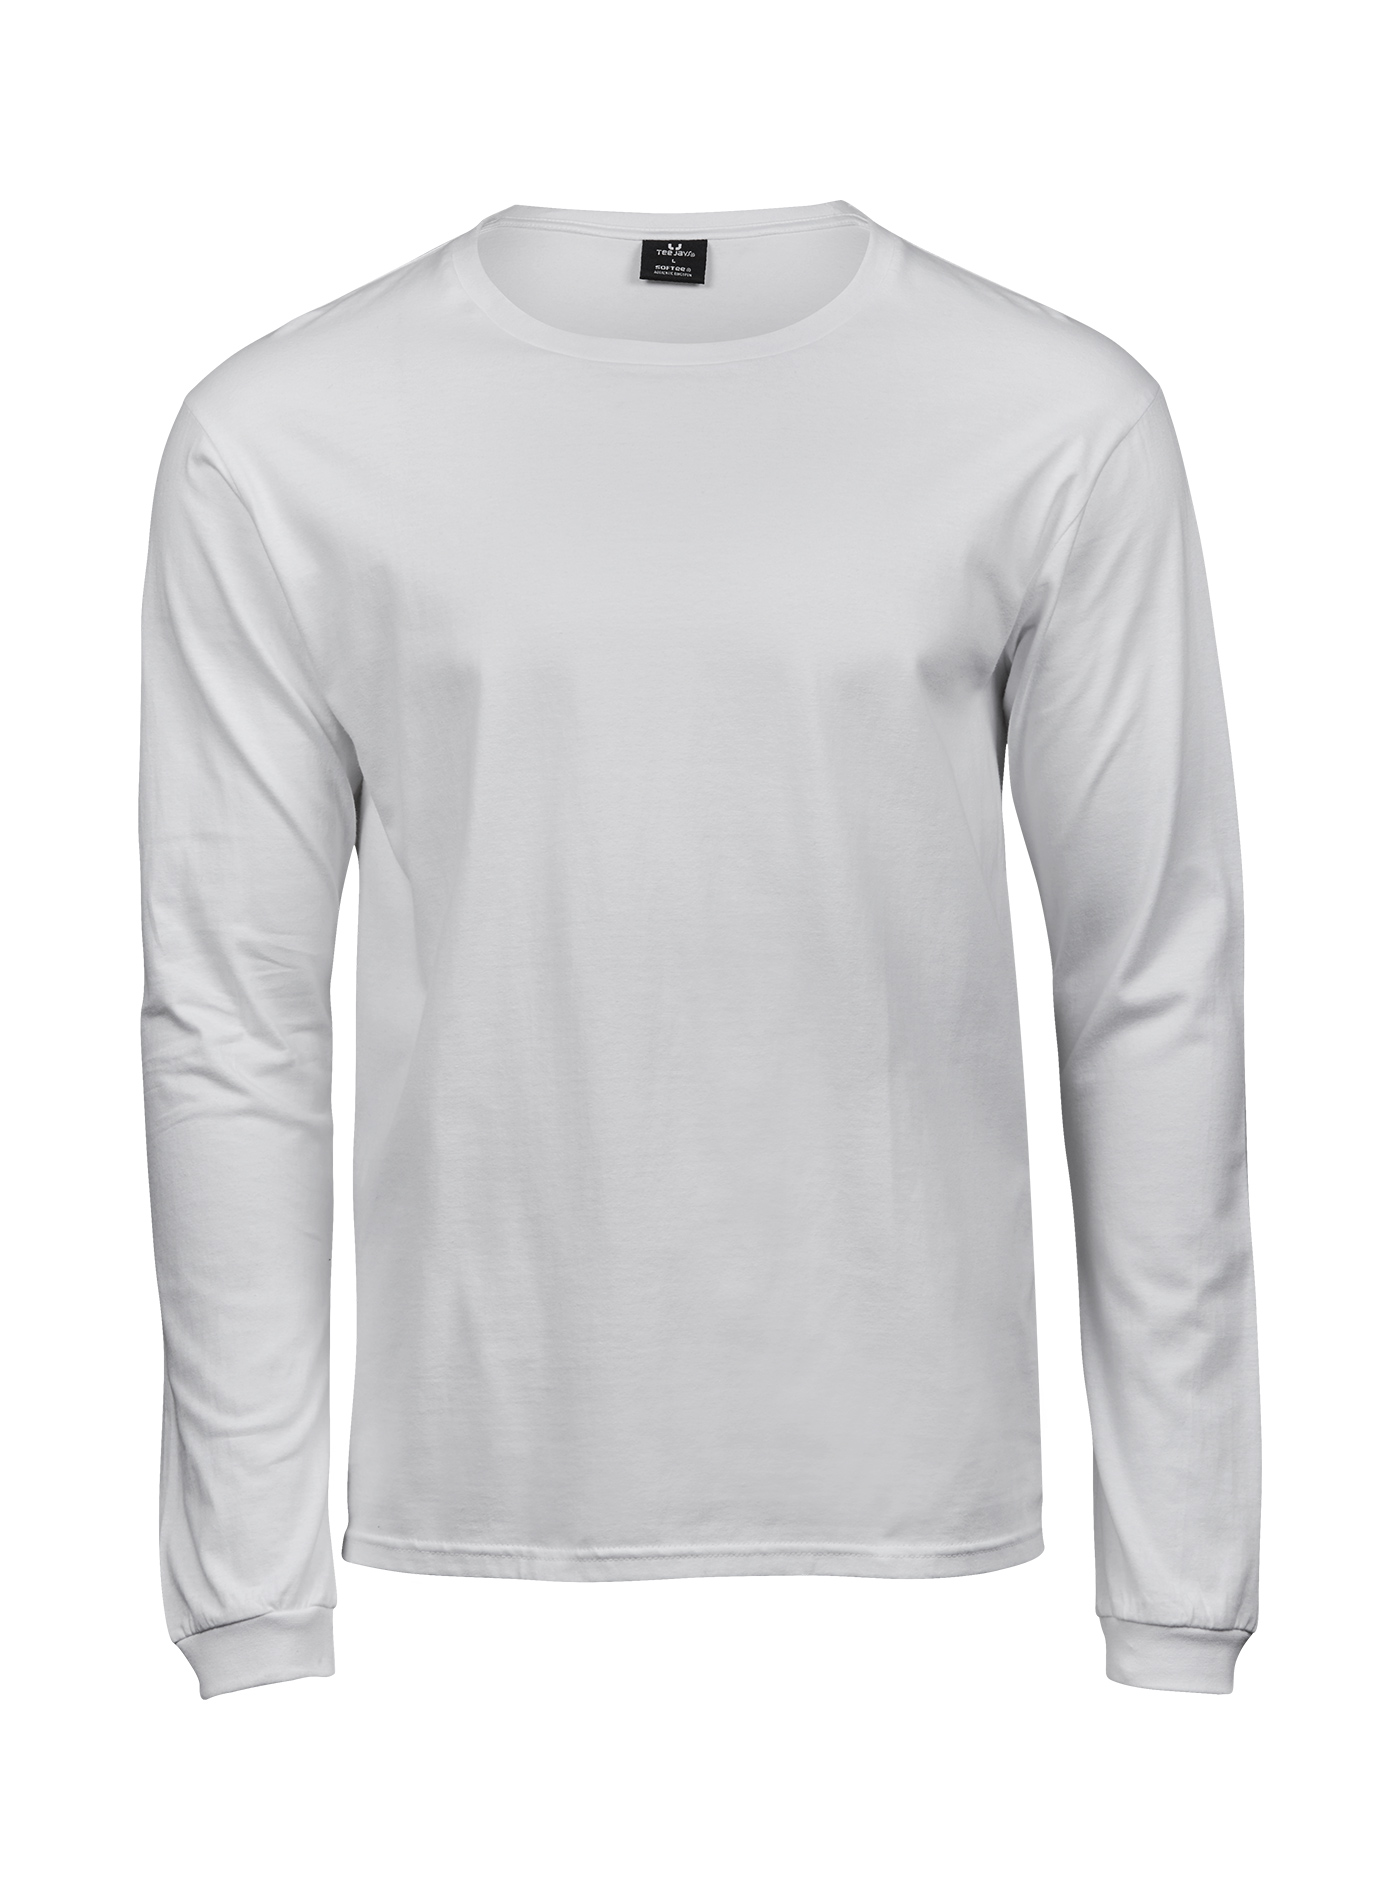 Pánské tričko s dlouhým rukávem Tee Jays Sof-Tee - Bílá 5XL